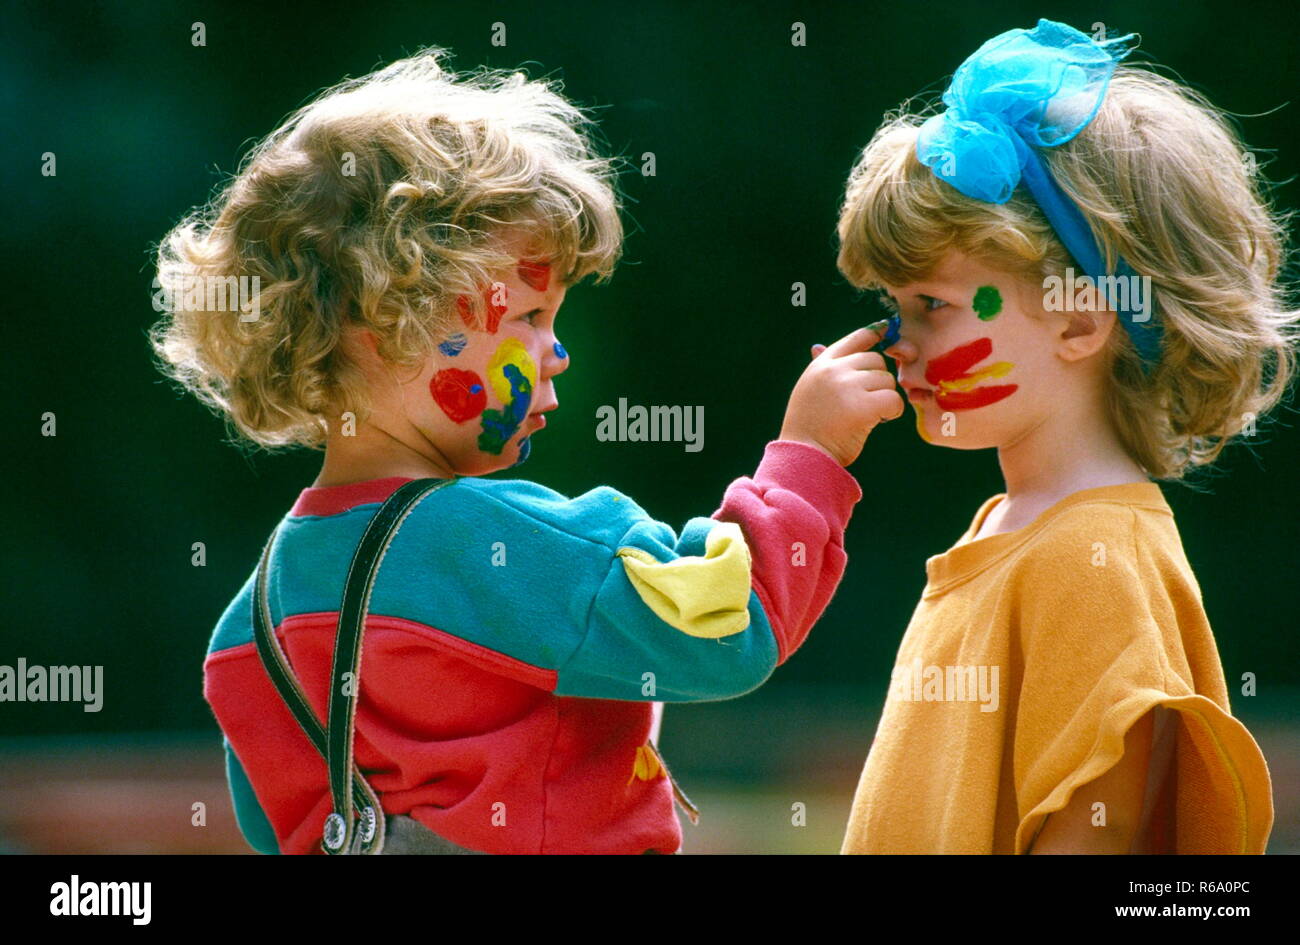 Portrait, 2 blondgelockte Kinder, Junge und Maedchen, 4 Jahre, bemalen sich gegenseitig ihre Gesichter mit Fingerfarben Stock Photo